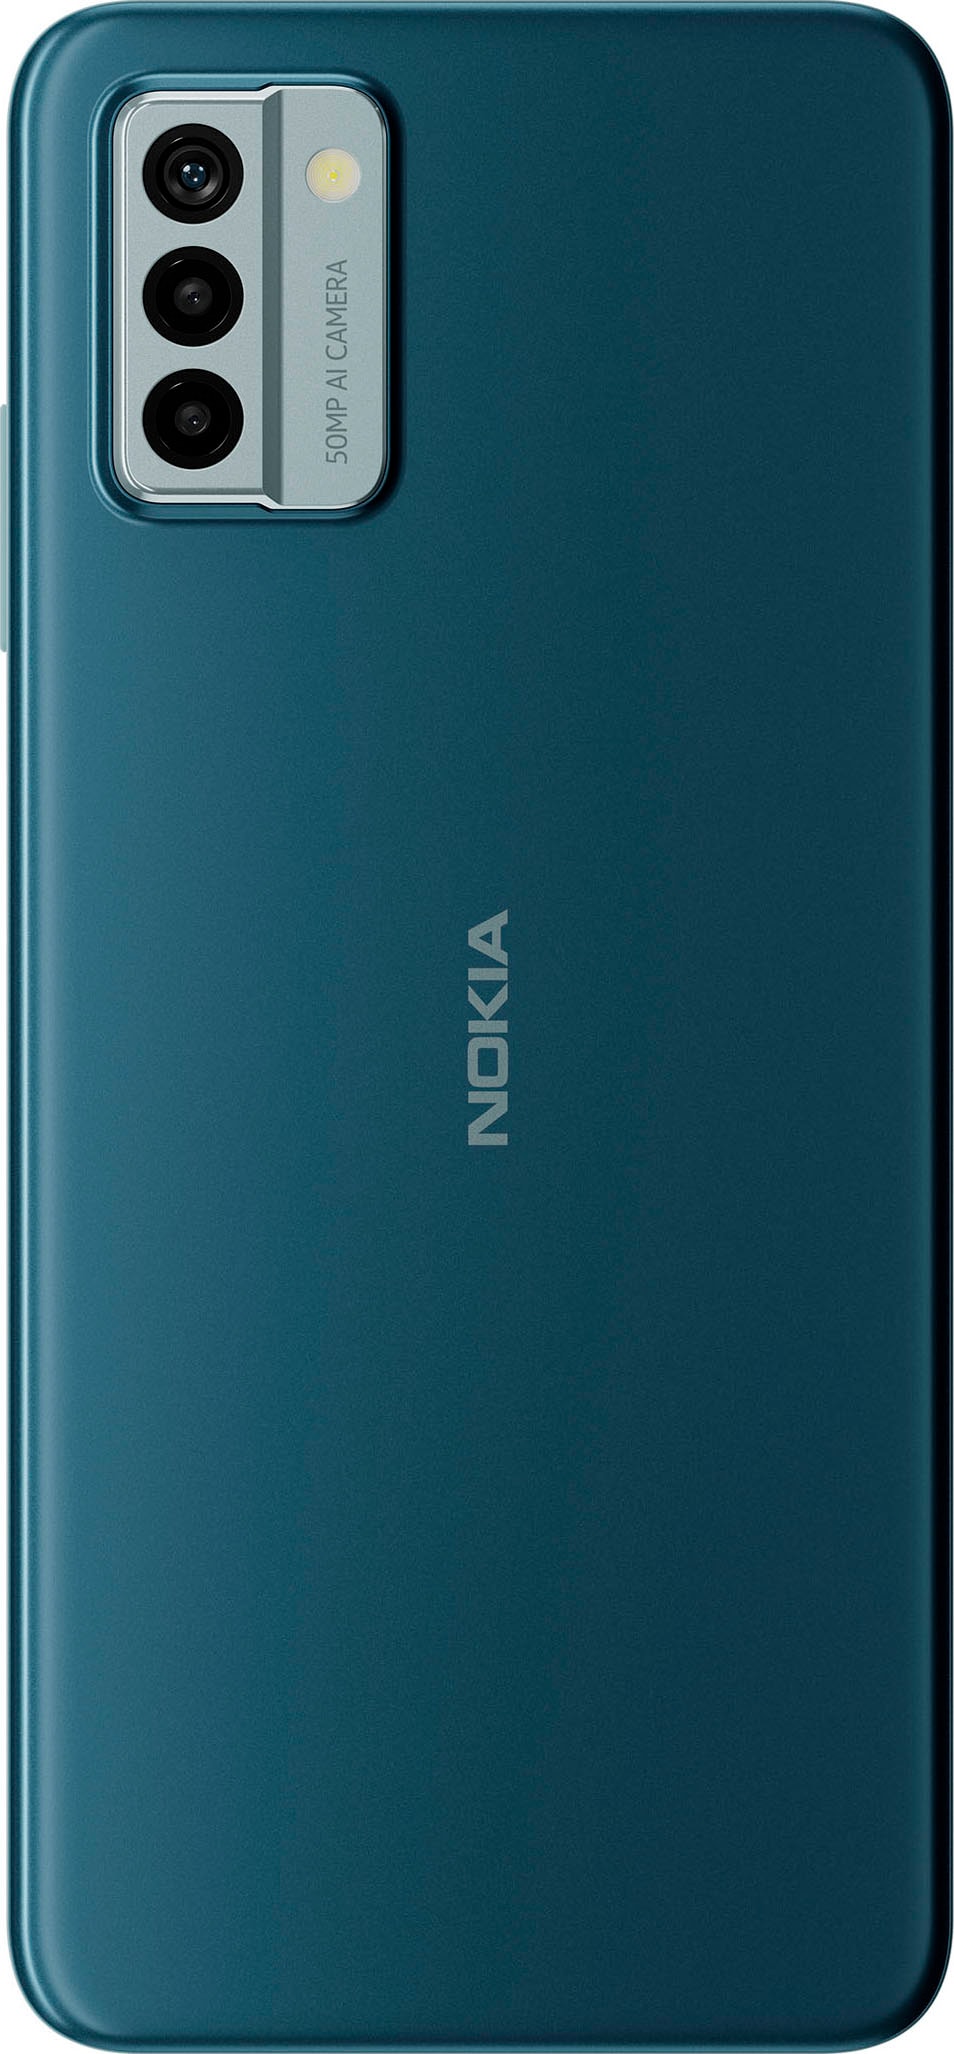 Nokia Smartphone »G22«, grau, 16,56 cm/6,52 Zoll, 64 GB Speicherplatz, 50 MP  Kamera auf Rechnung bestellen